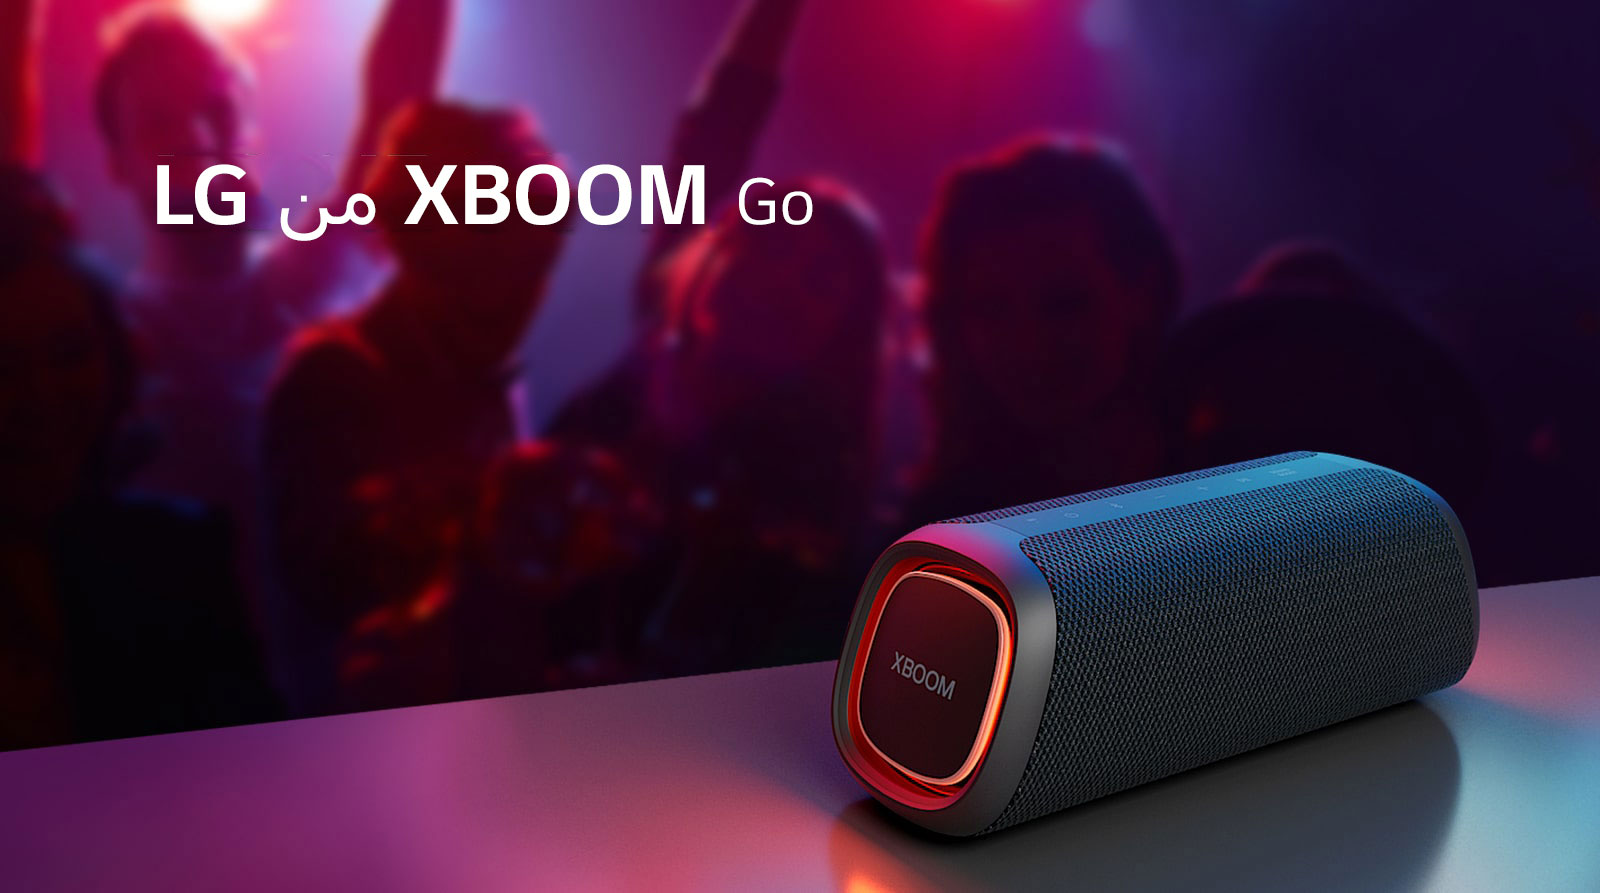 مكبر الصوت XBOOM Go XG5 من LG موضوع على طاولة معدنية ومضبوط على وضع الإضاءة البرتقالية. أشخاص يستمتعون بالموسيقى من خلف الطاولة.